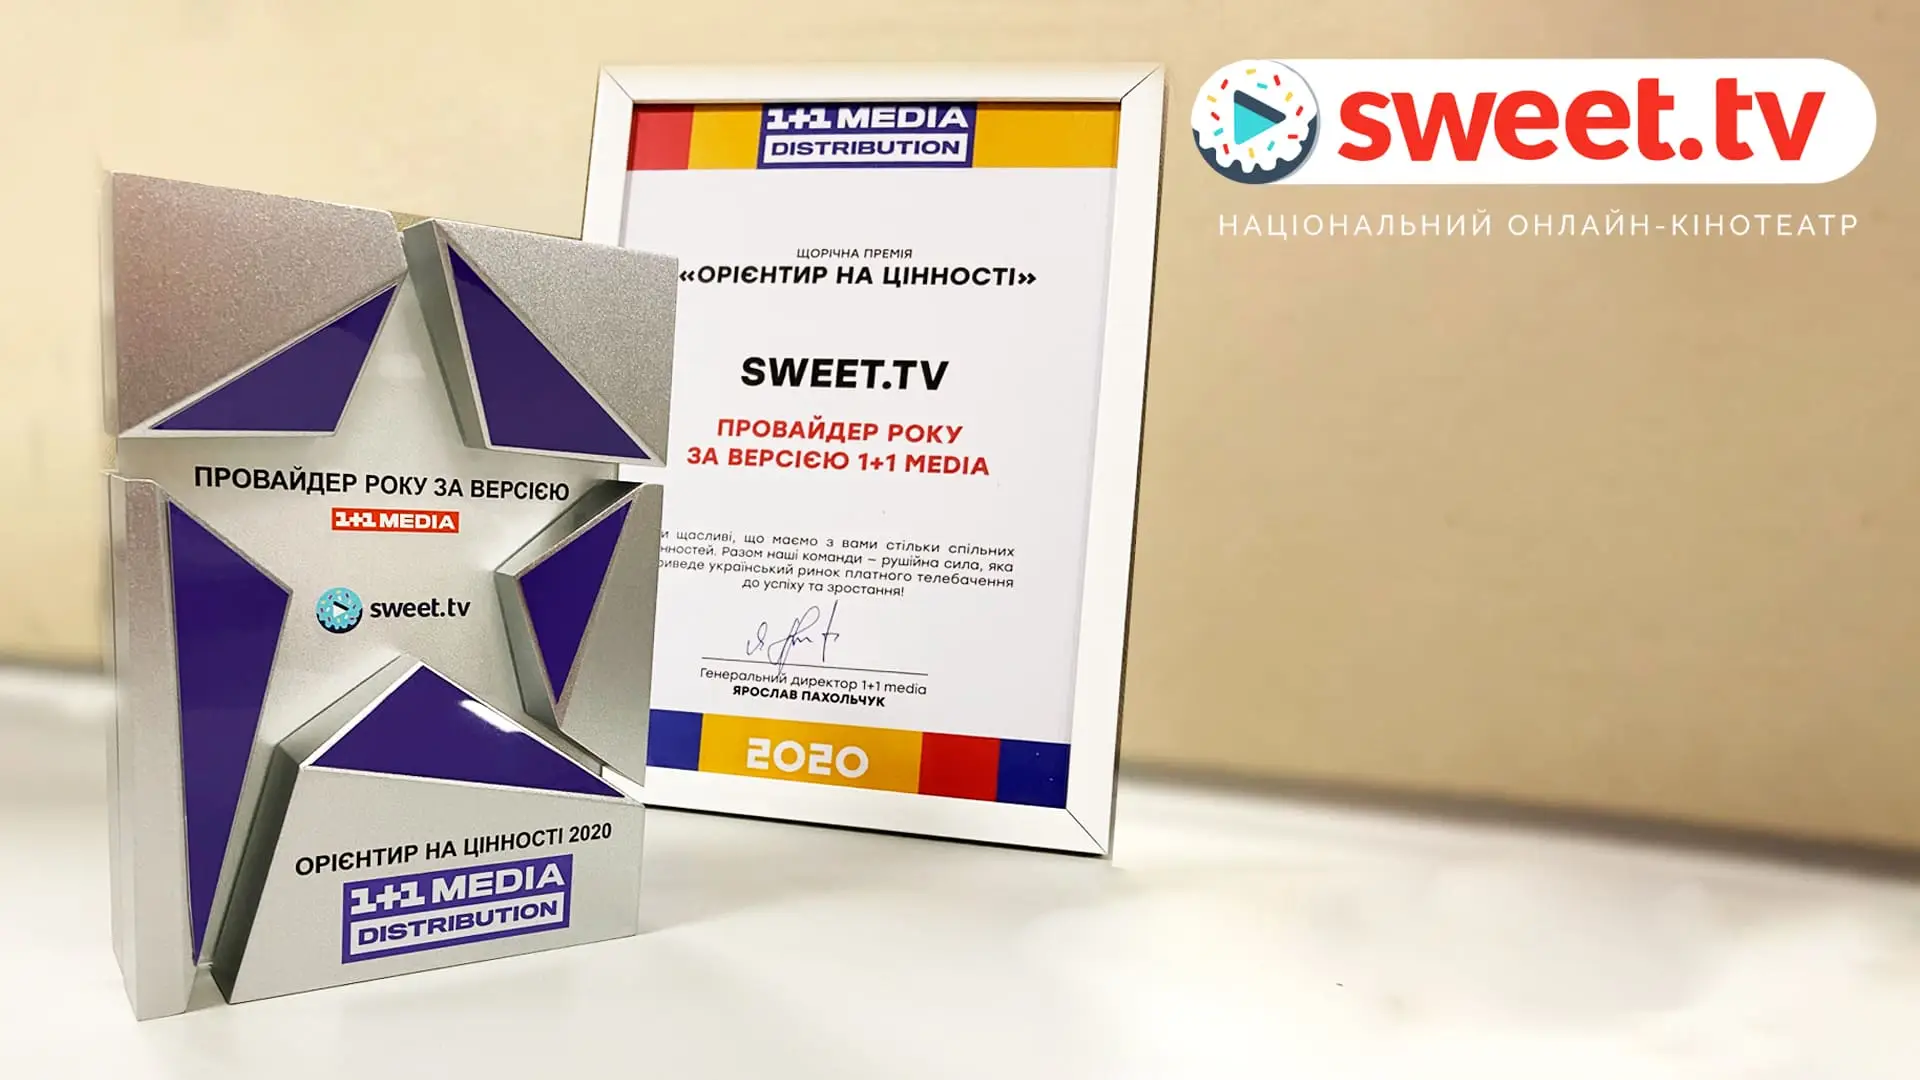 SWEET.TV — найкращий провайдер 2020 року за версією 1+1 MEDIA DISTRIBUTION